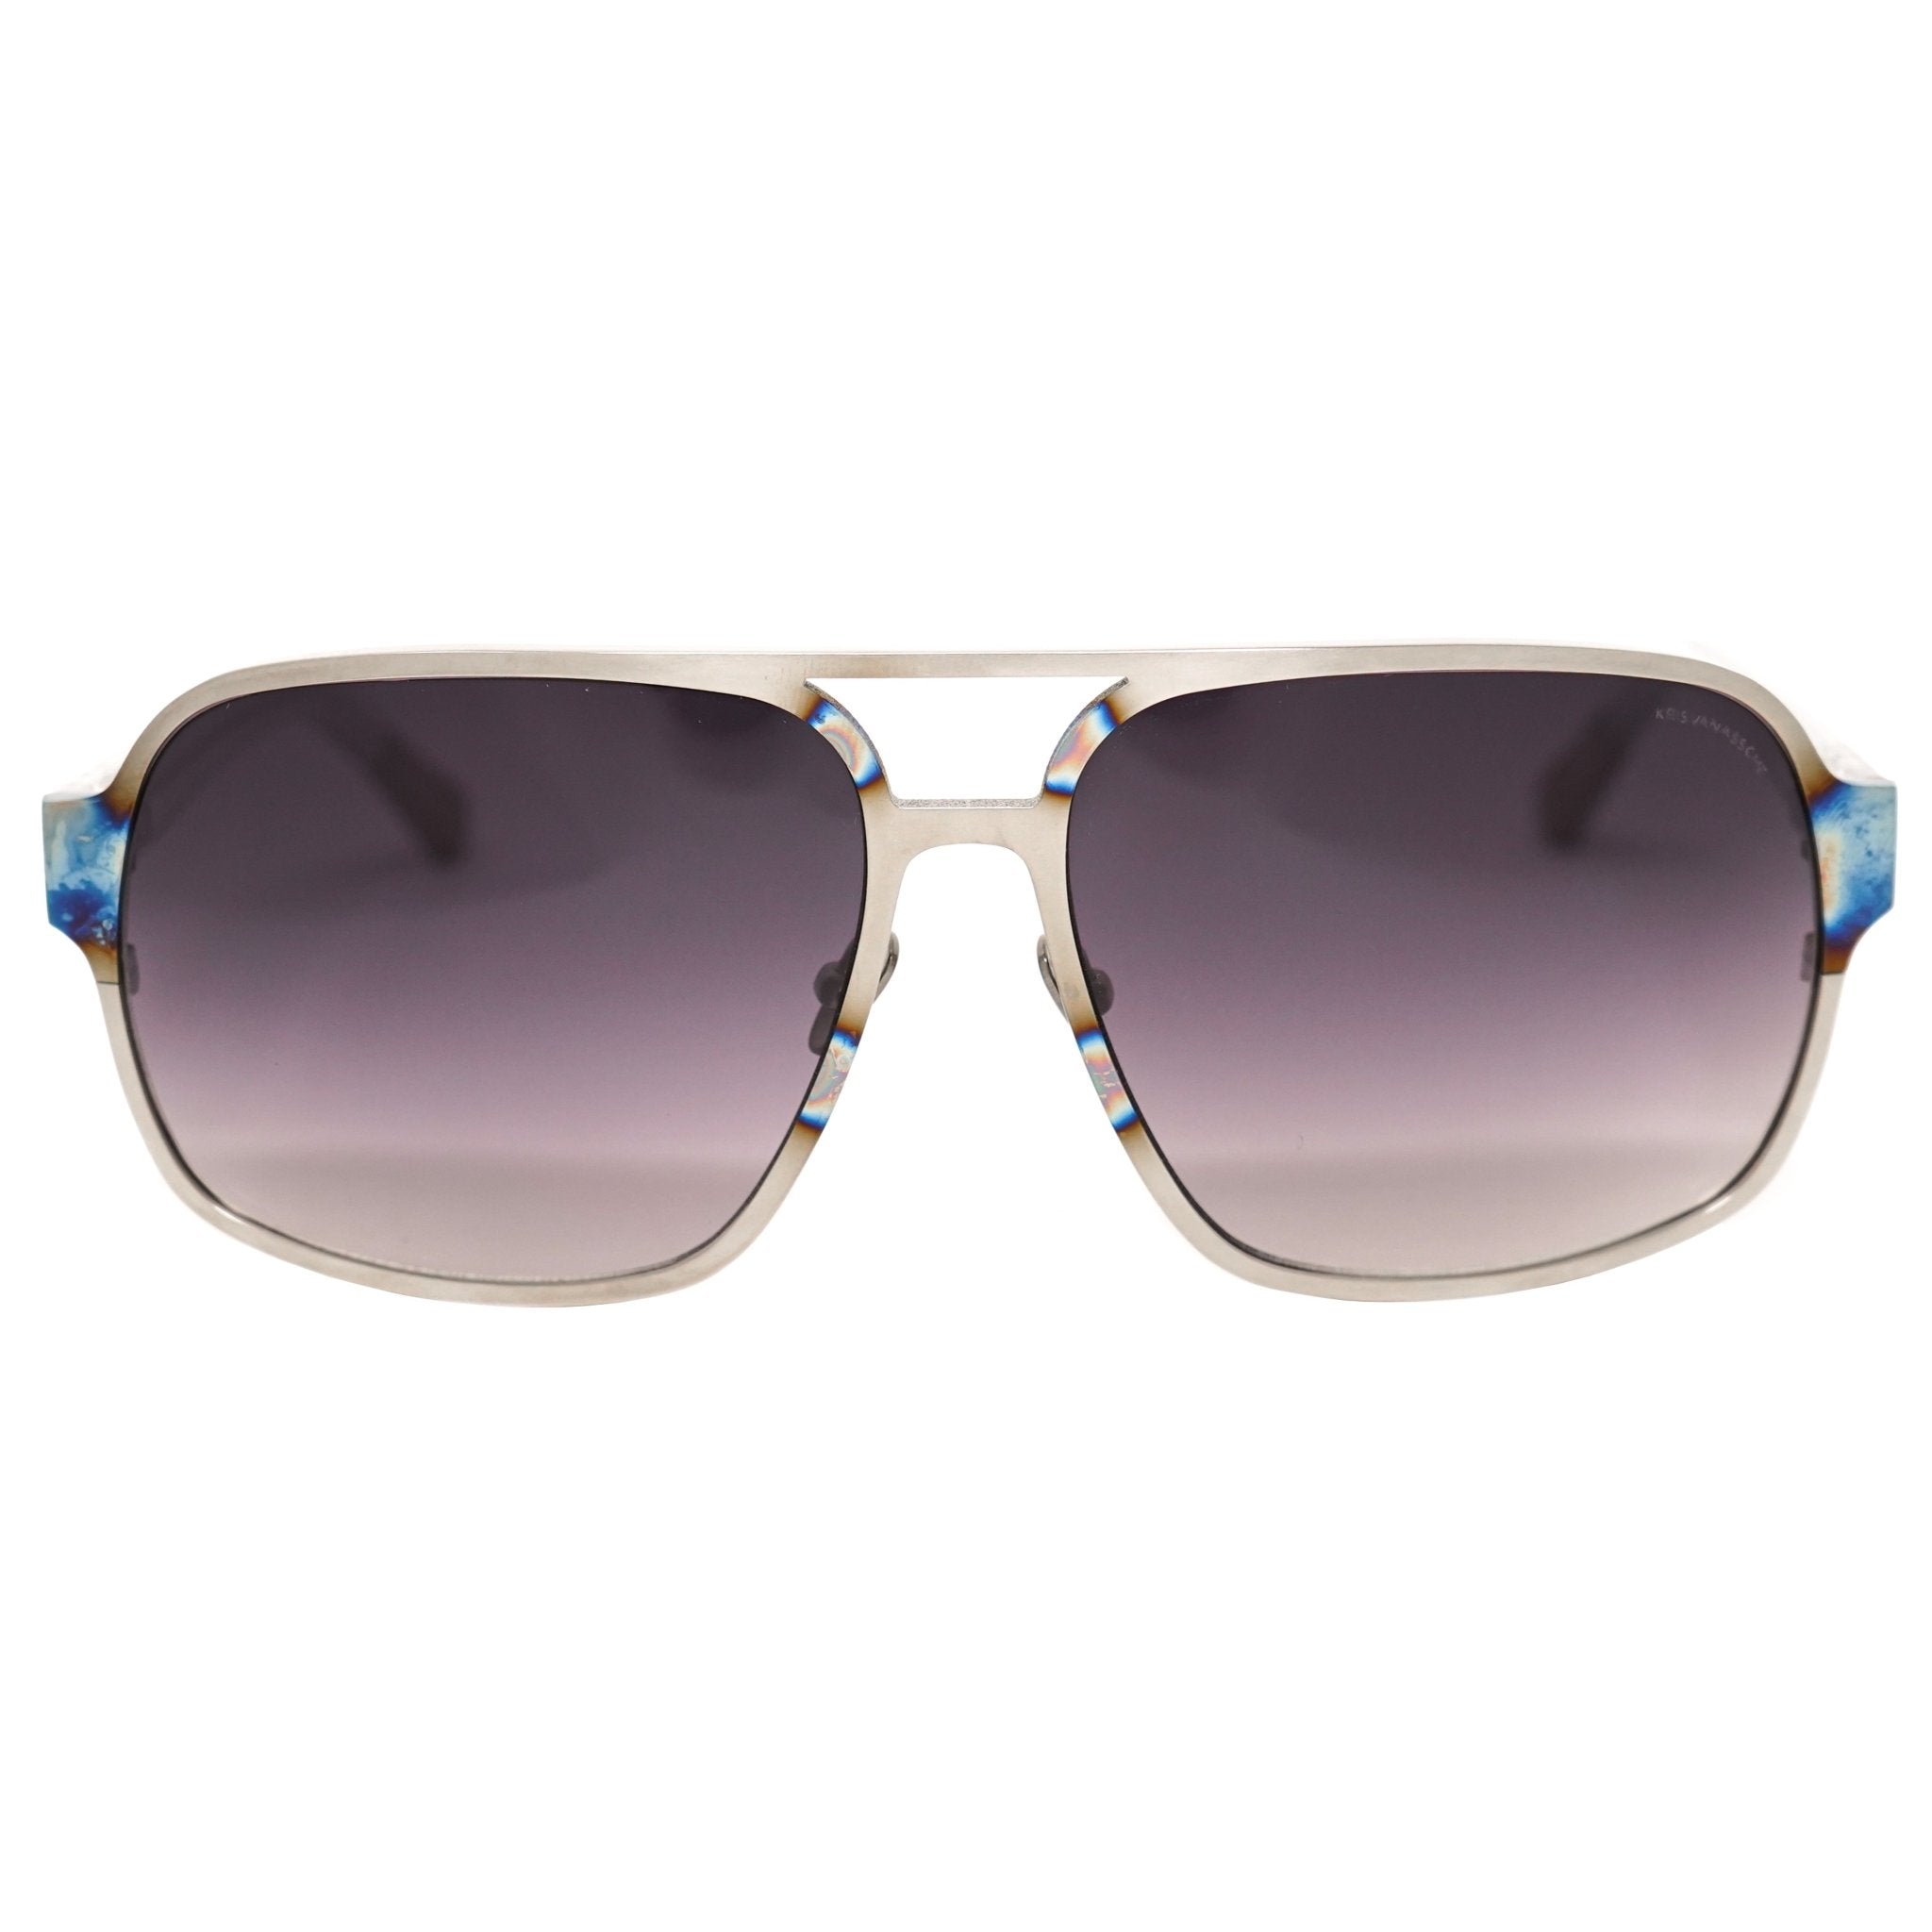 Kris Van Assche Sunglasses Rectangular Purple and Metalic SIlver - Watches & Crystals